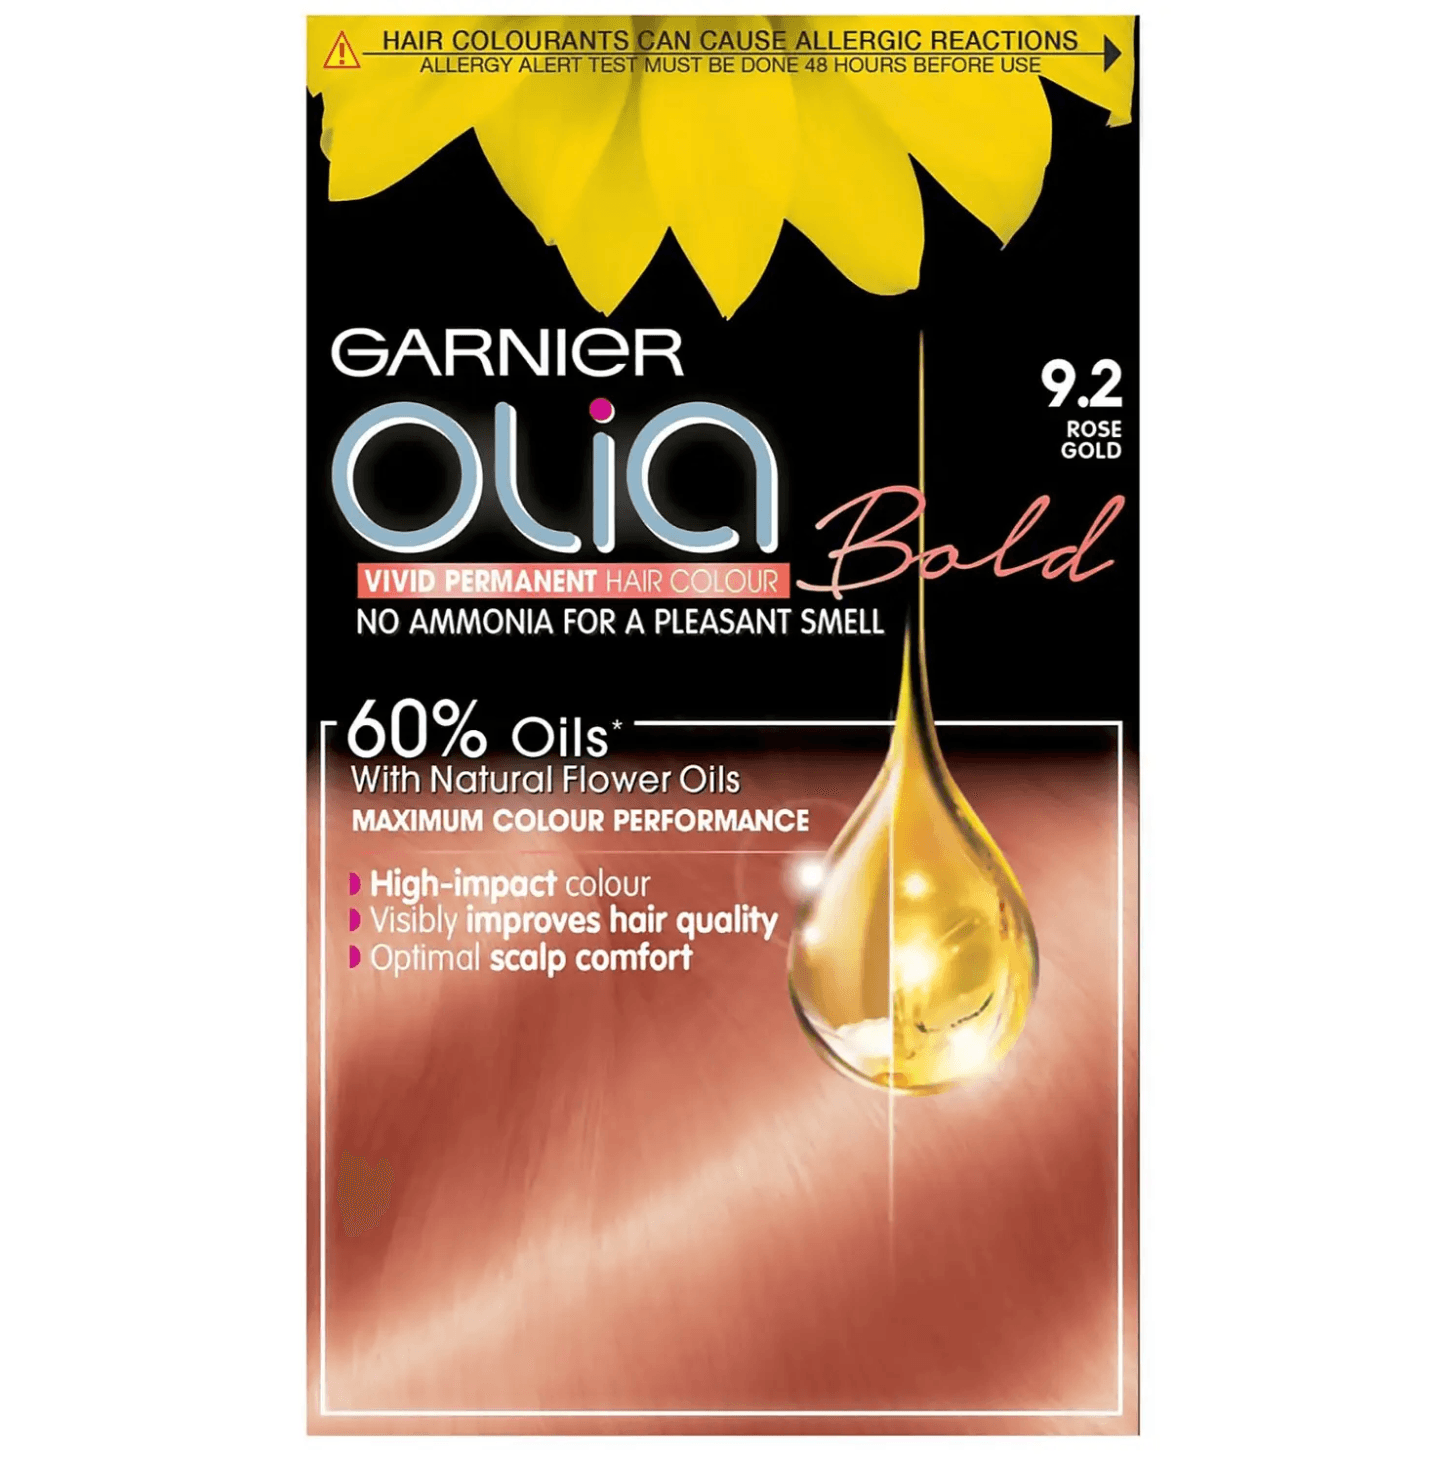 Garnier Olia Bold Permanent Hair Colour 9.2 Rose Gold - www.indiancart.com.au - Hair Colour - Garnier - Garnier